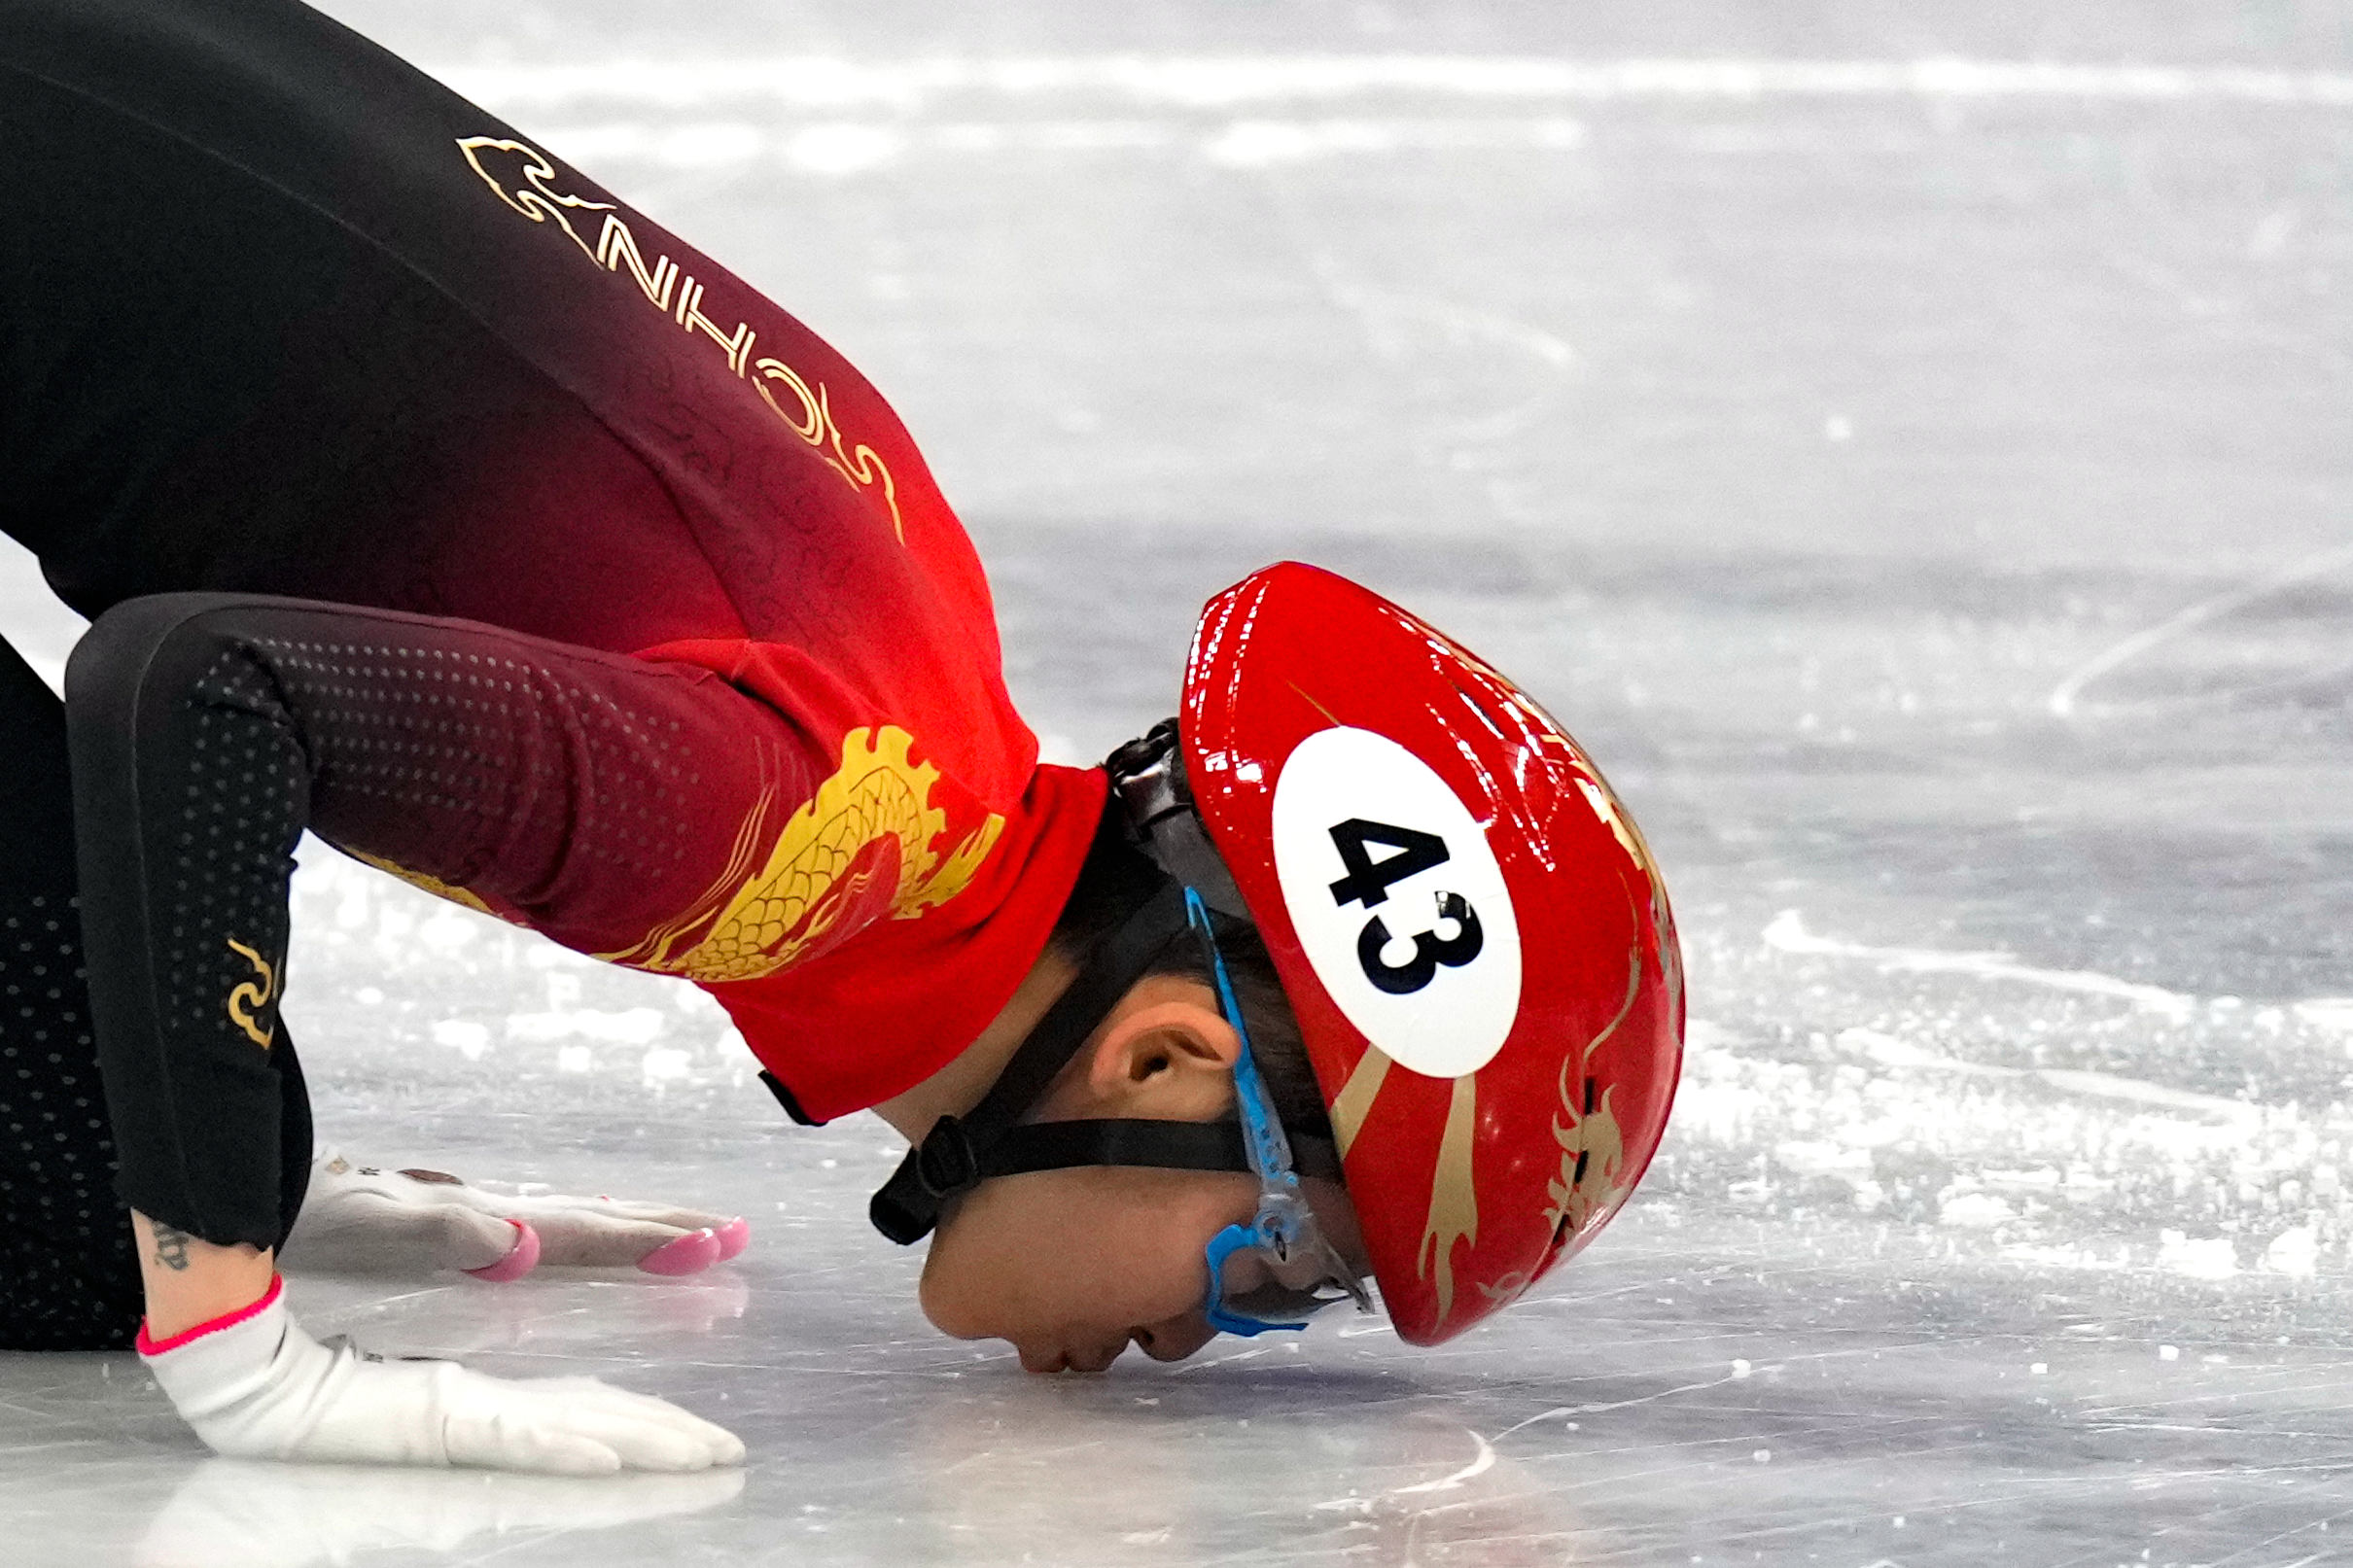 冬奥会短道速滑素材图片